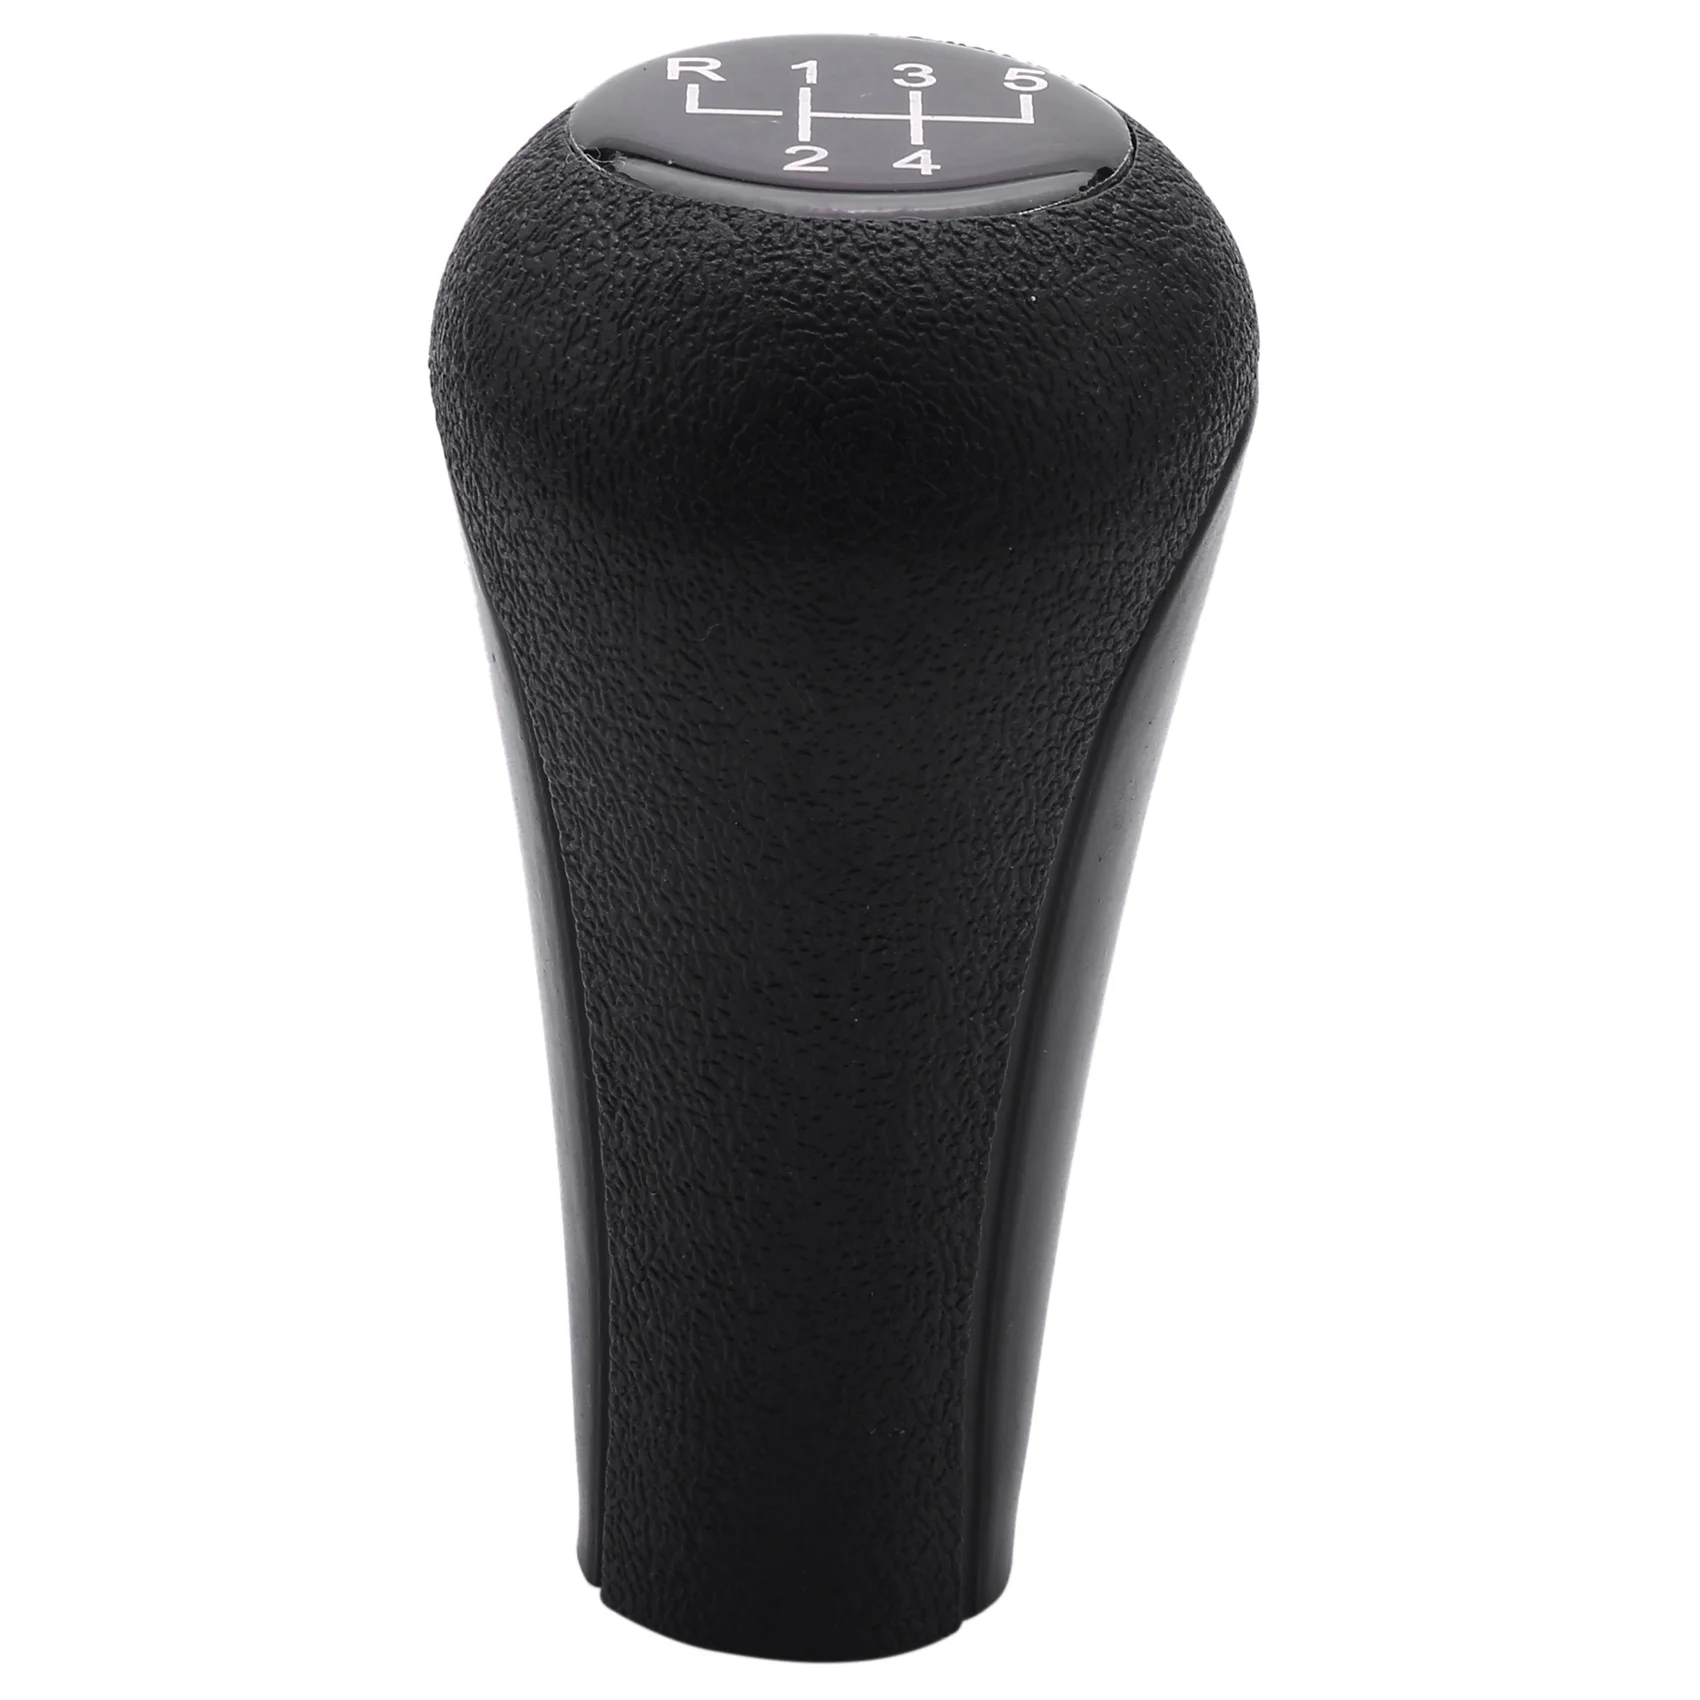 

5 speed Manual Plastic Gear Shift Knob 12mm Stick Hole (Black) for BMW Series 1 to 7 X5 E30 E36 E46 E39 E34 Z3